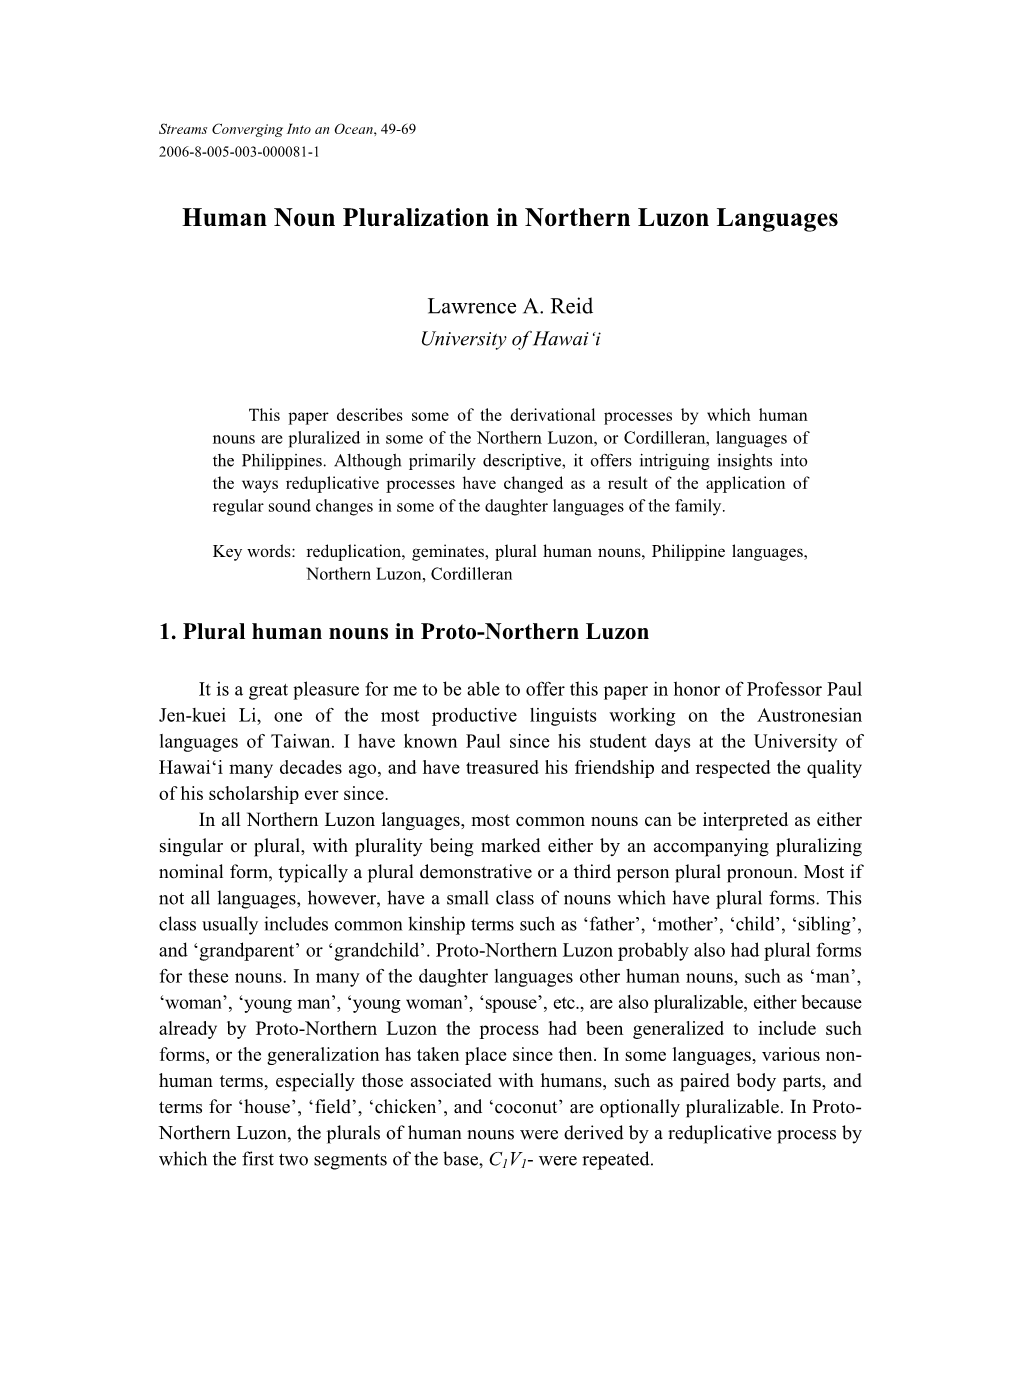 Human Noun Pluralization in Northern Luzon Languages